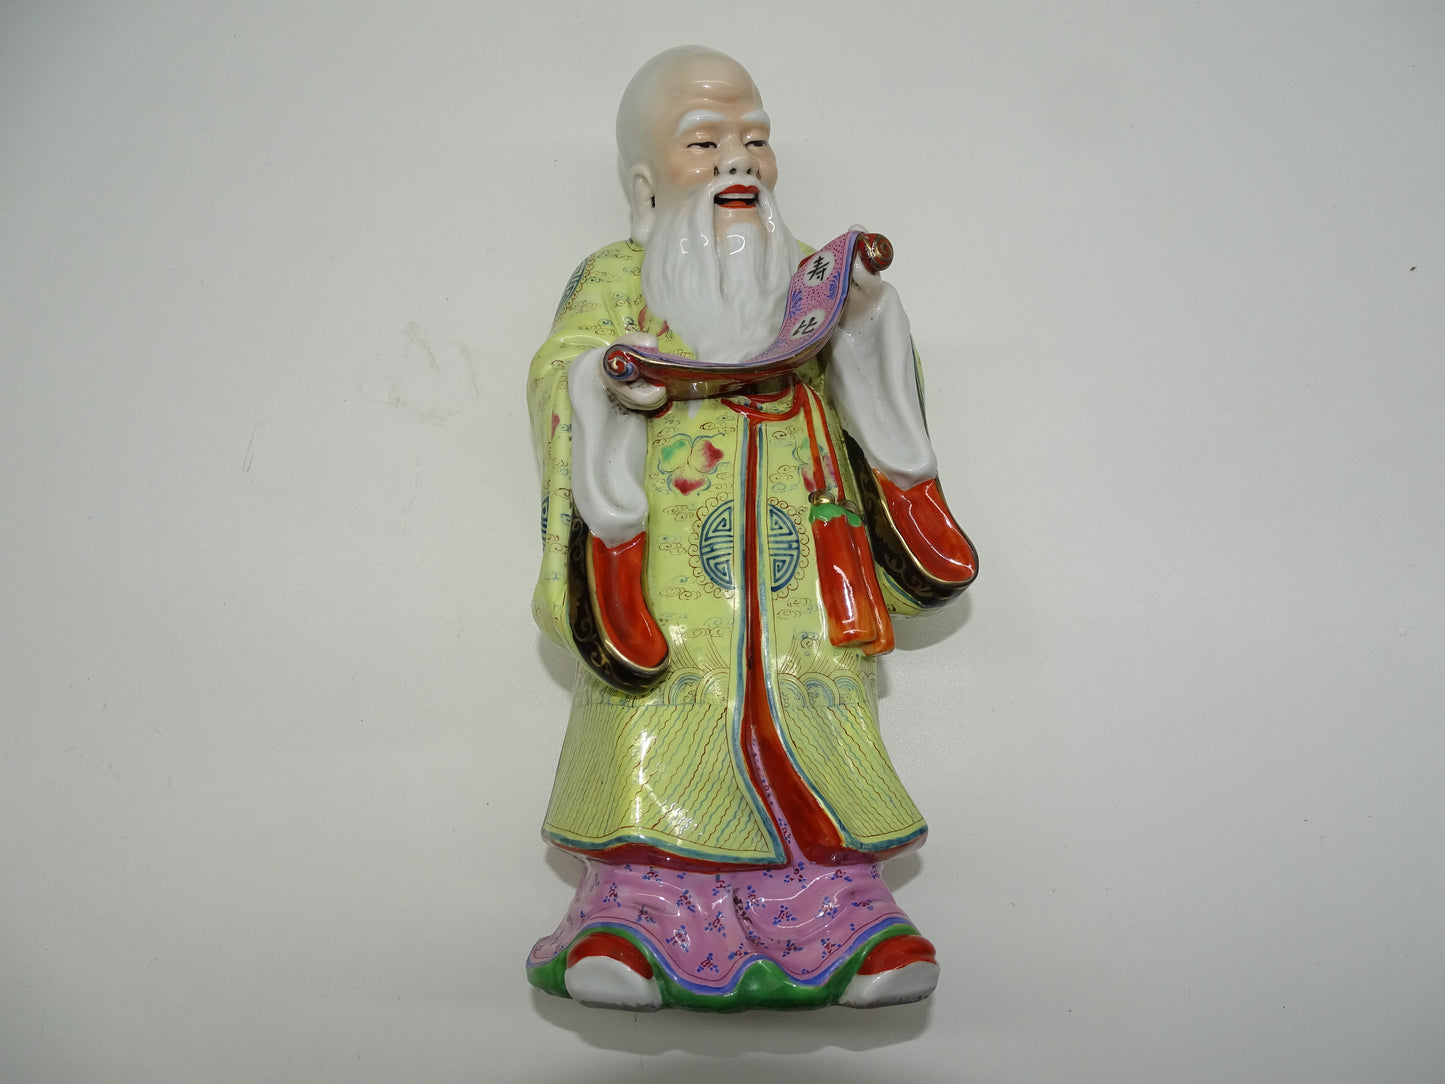 Beeld: Shou Xiang, Chinese Mythologie